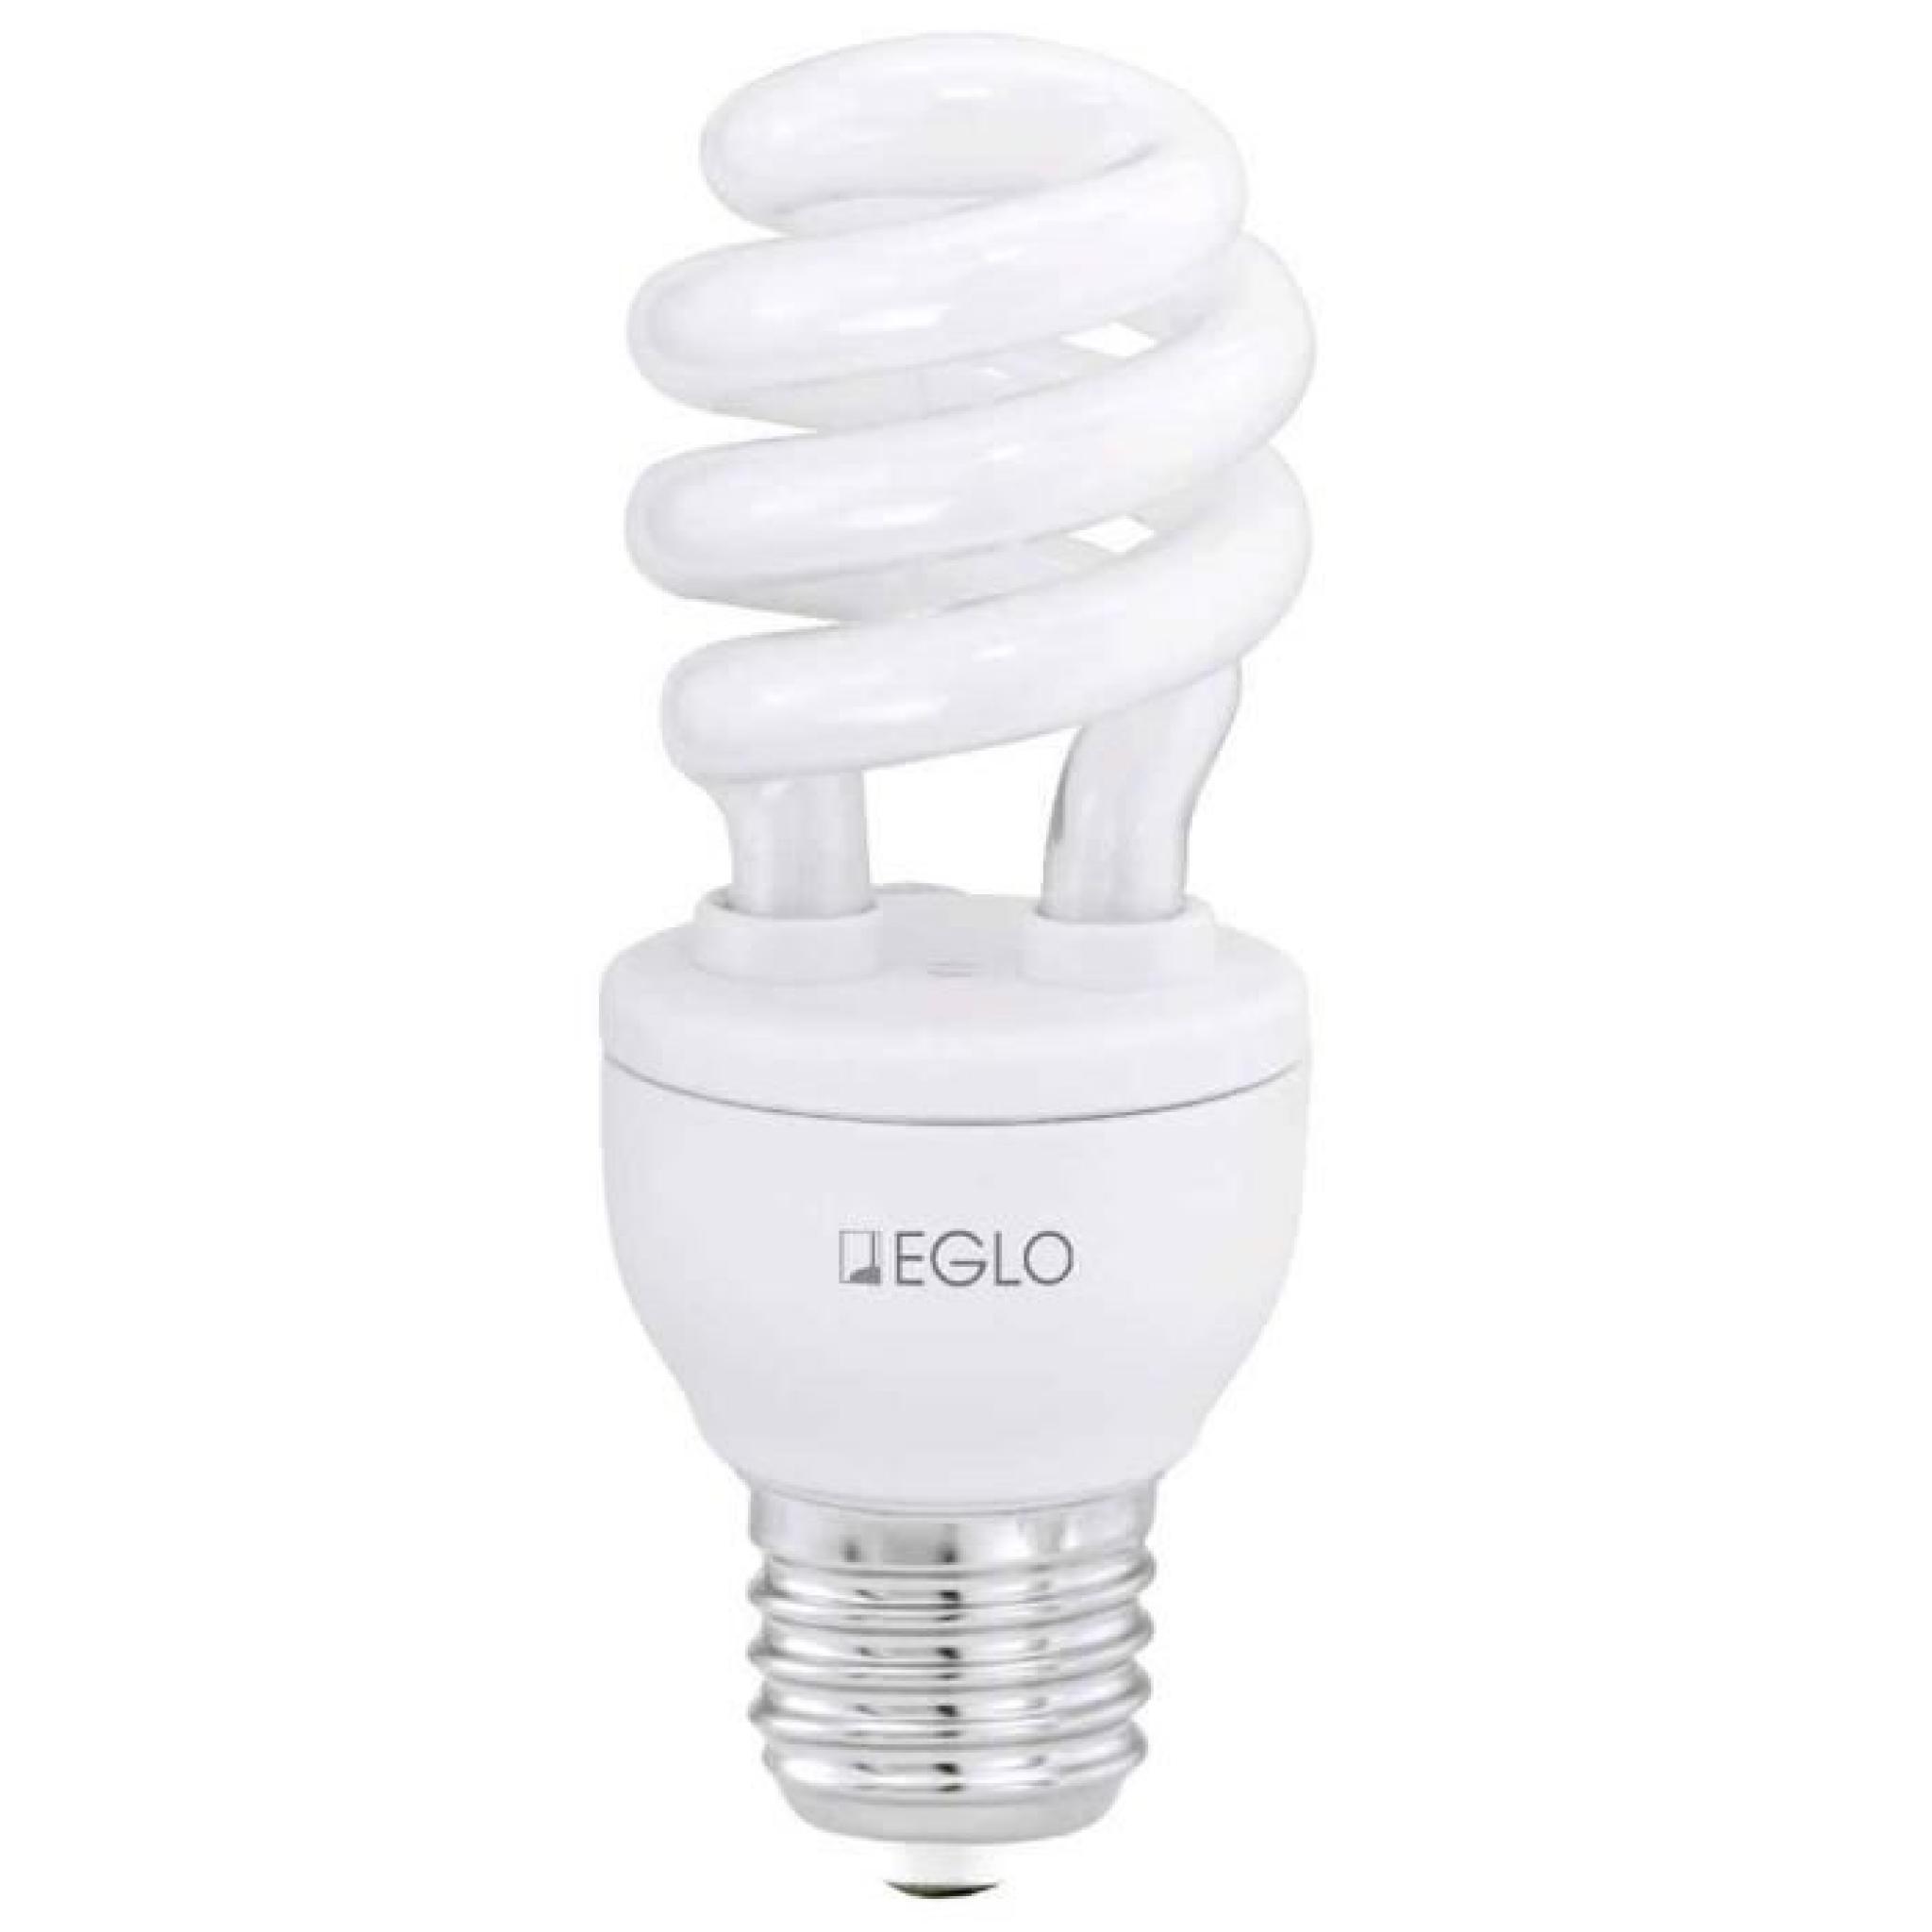 Eglo lampe économique 12715 agent lumineux  E27...